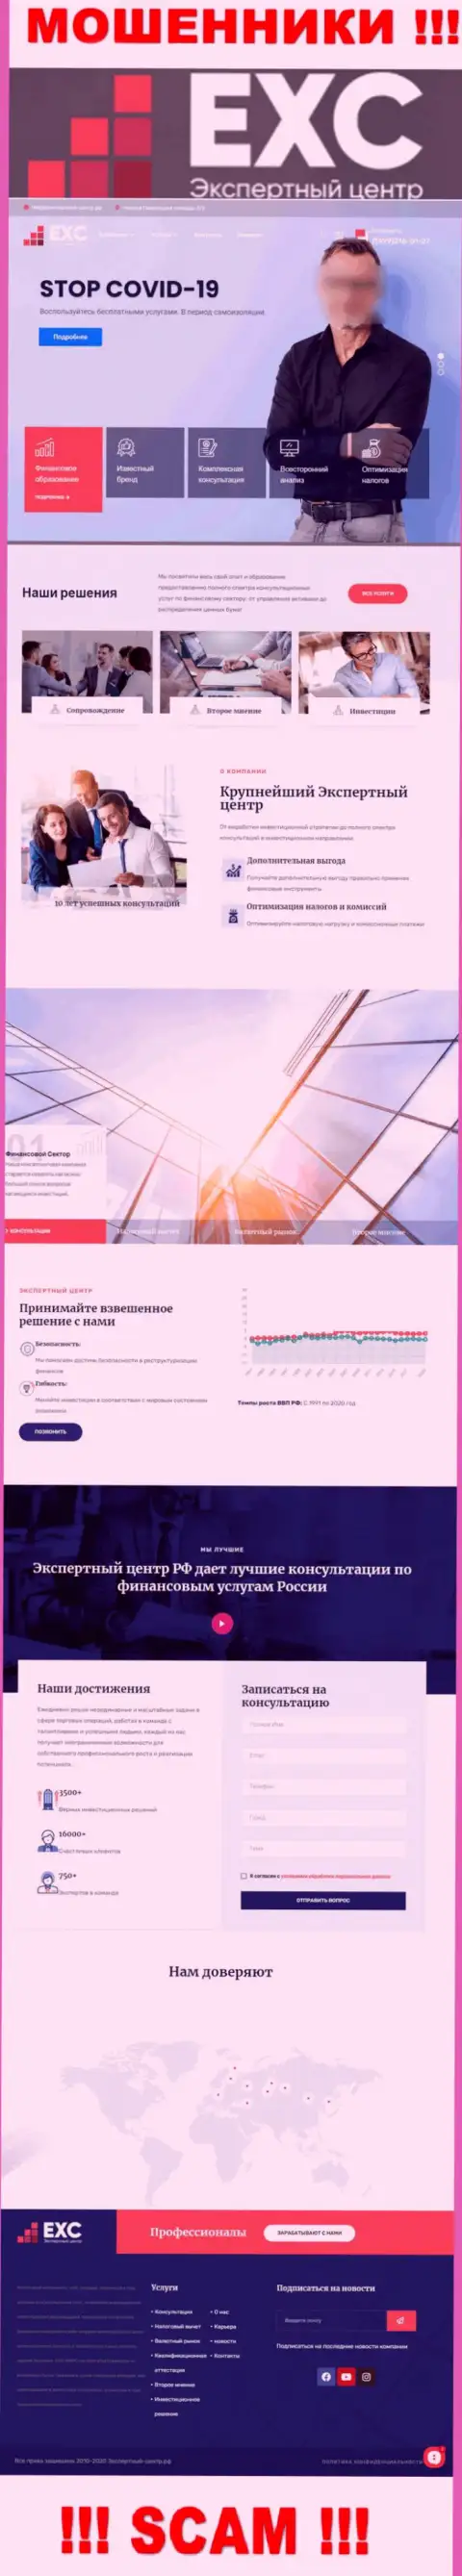 Официальный web-портал мошенников Экспертный Центр РФ